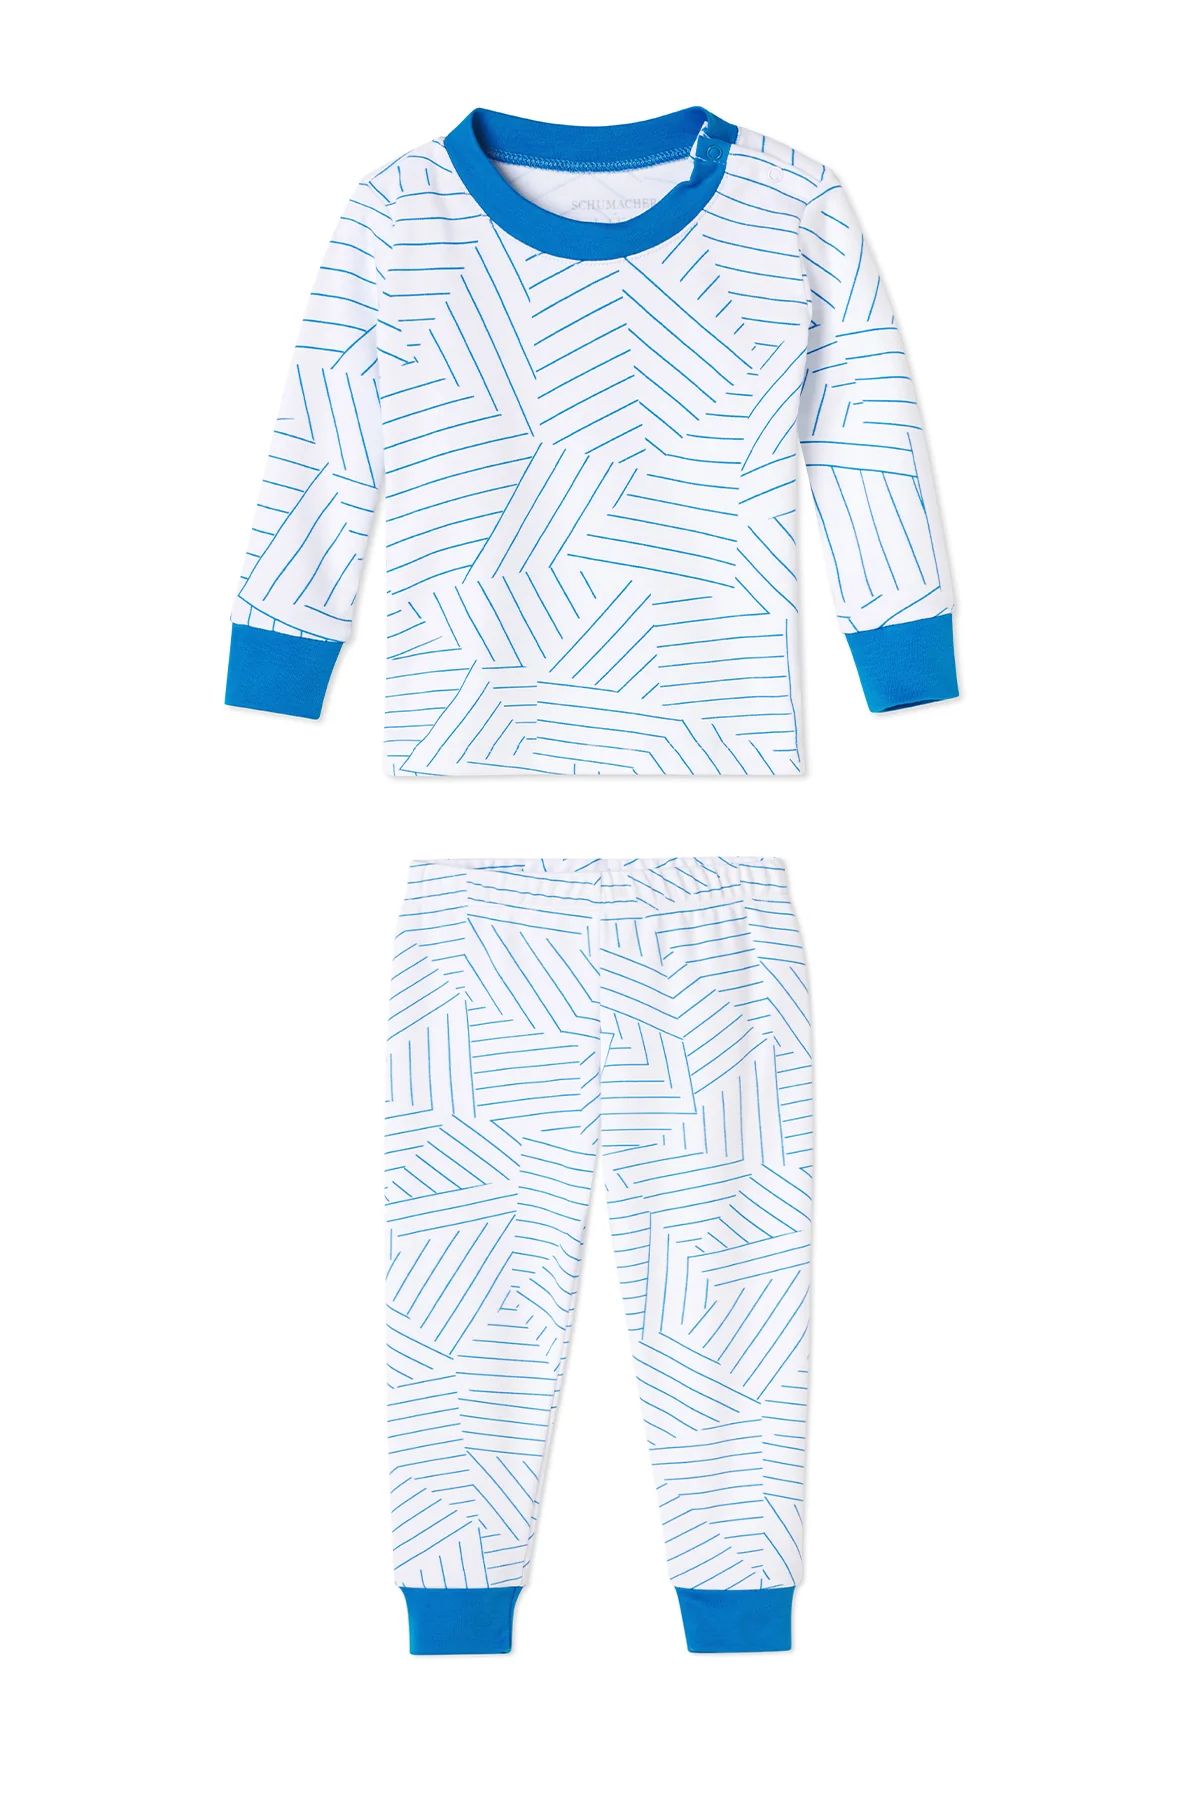 Schumacher x LAKE Baby Long-Long Set in Cobalt | LAKE Pajamas